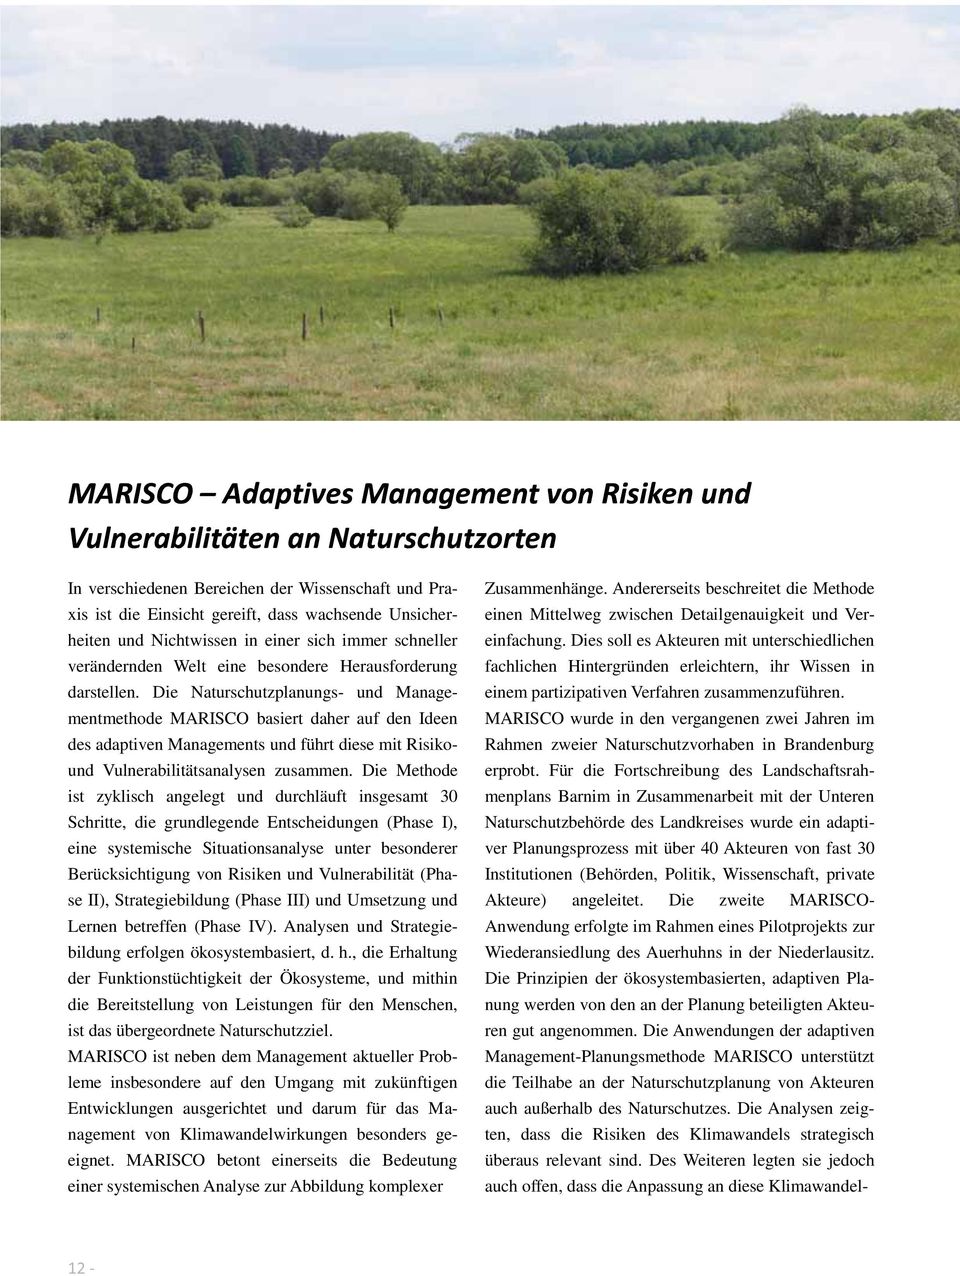 Die Naturschutzplanungs und Managementmethode MARISCO basiert daher auf den Ideen des adaptiven Managements und führt diese mit Risikound Vulnerabilitätsanalysen zusammen.